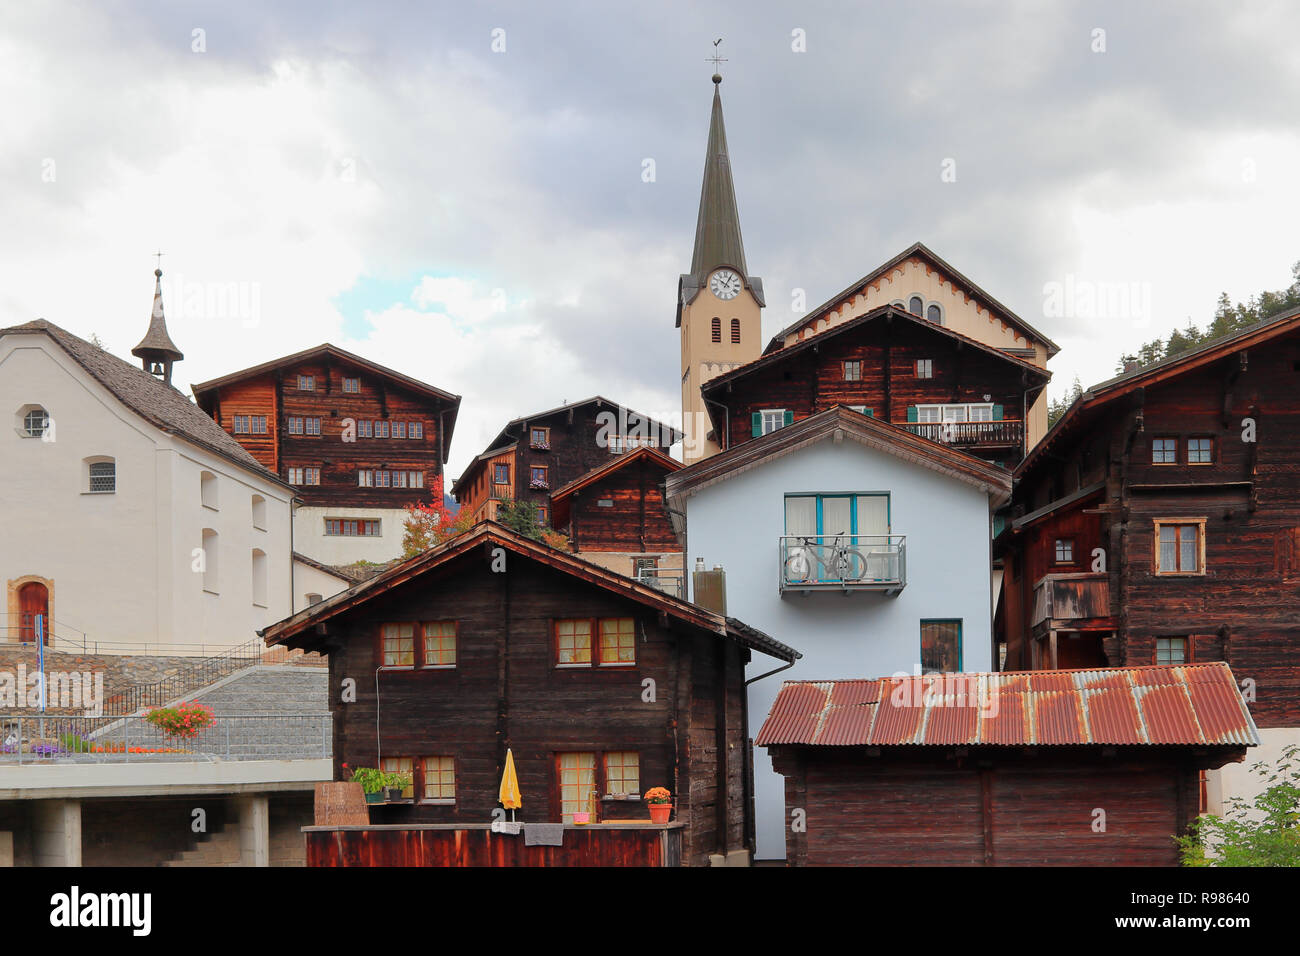 FIESCH, Canton du Valais, Suisse - 10 octobre 2018 : Avis de Fiesch village, site du patrimoine mondial de l'UNESCO Jungfrau-Aletsch, zone protégée des glaciers Banque D'Images